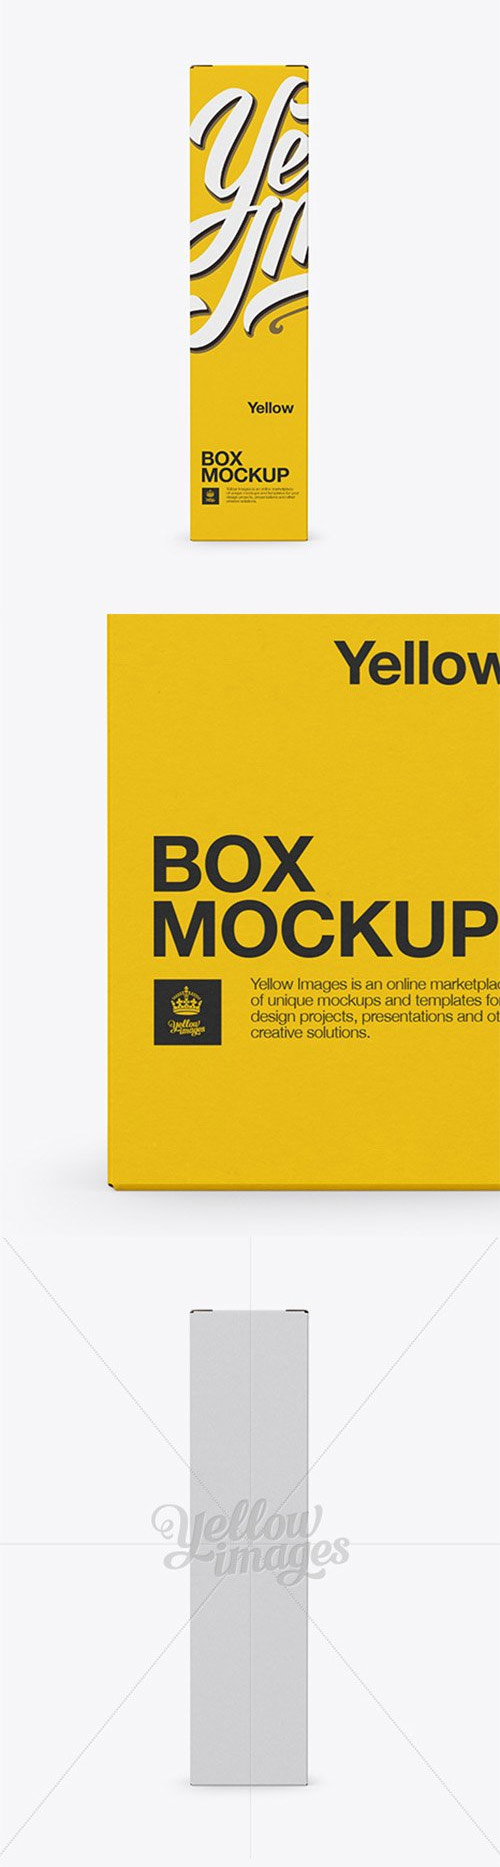 Box Mockup - Front View 16005